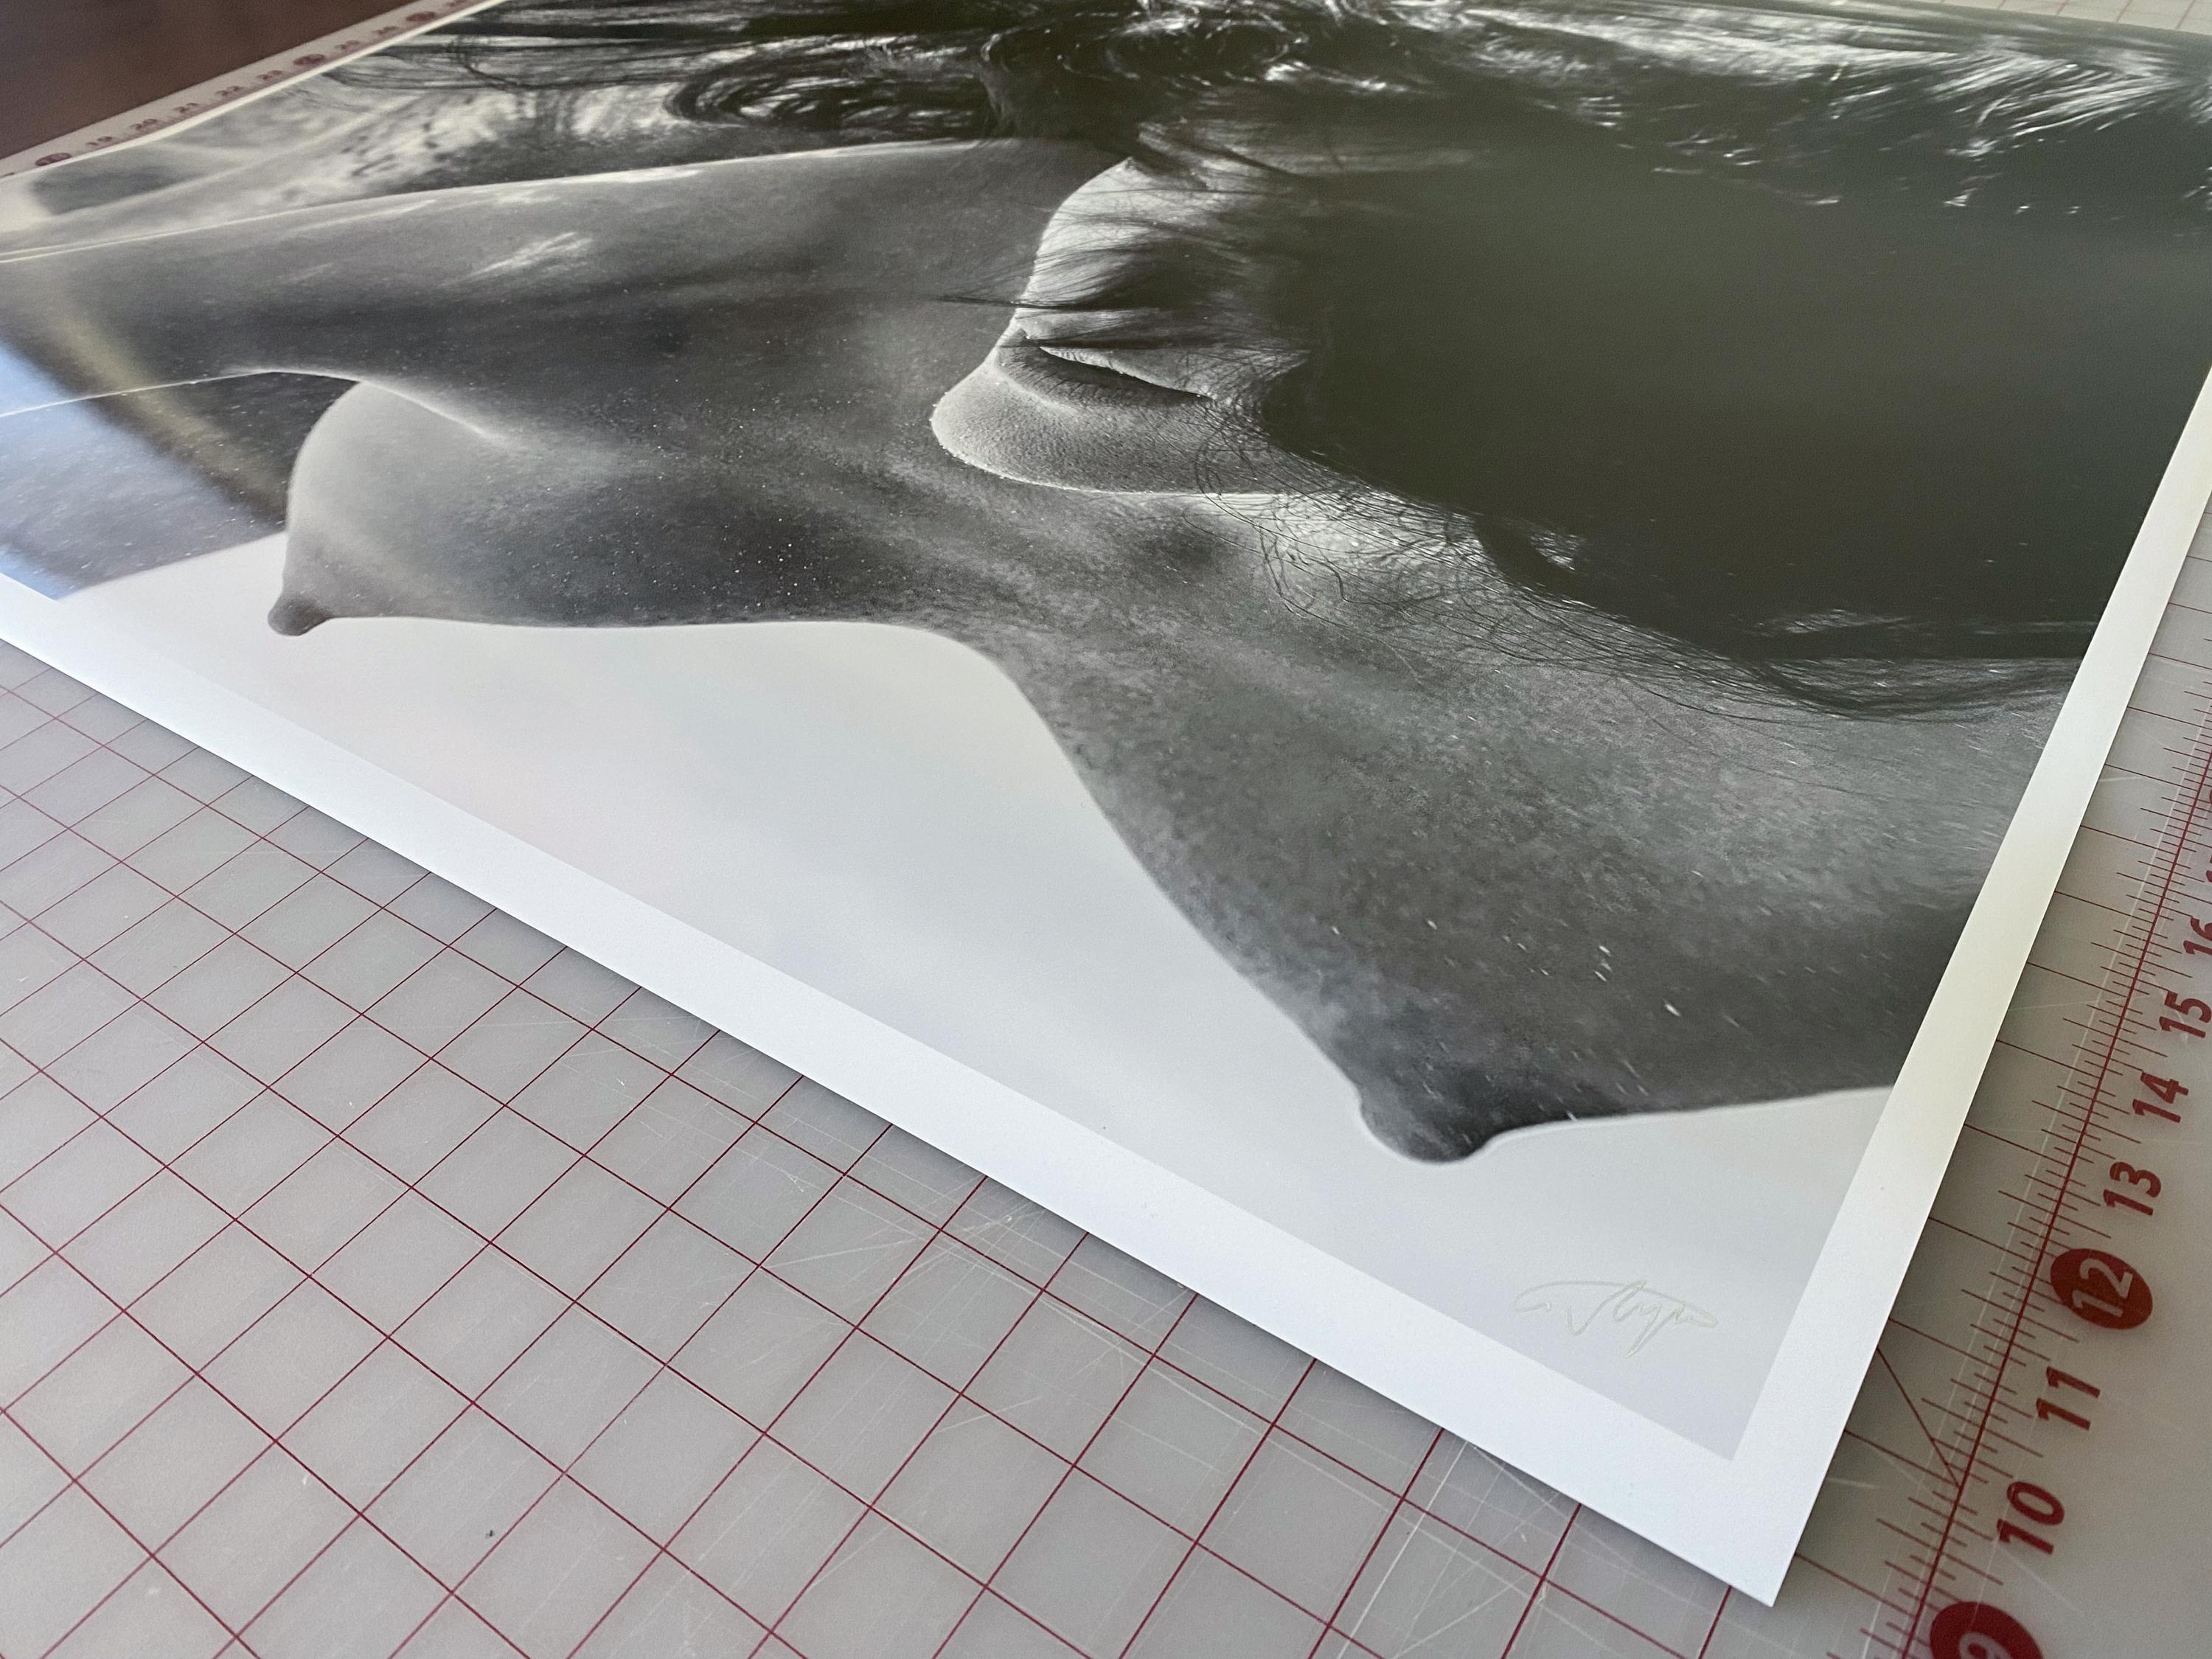 Eine Unterwasser-Schwarzweißfotografie einer schönen, oben ohne schwimmenden jungen Frau, Apriel, im Pool. 

Original-Pigmentdruck in Galeriequalität - vom Künstler signiert. 
Limitierte Auflage von 24 Stück
Papierformat: 30x36